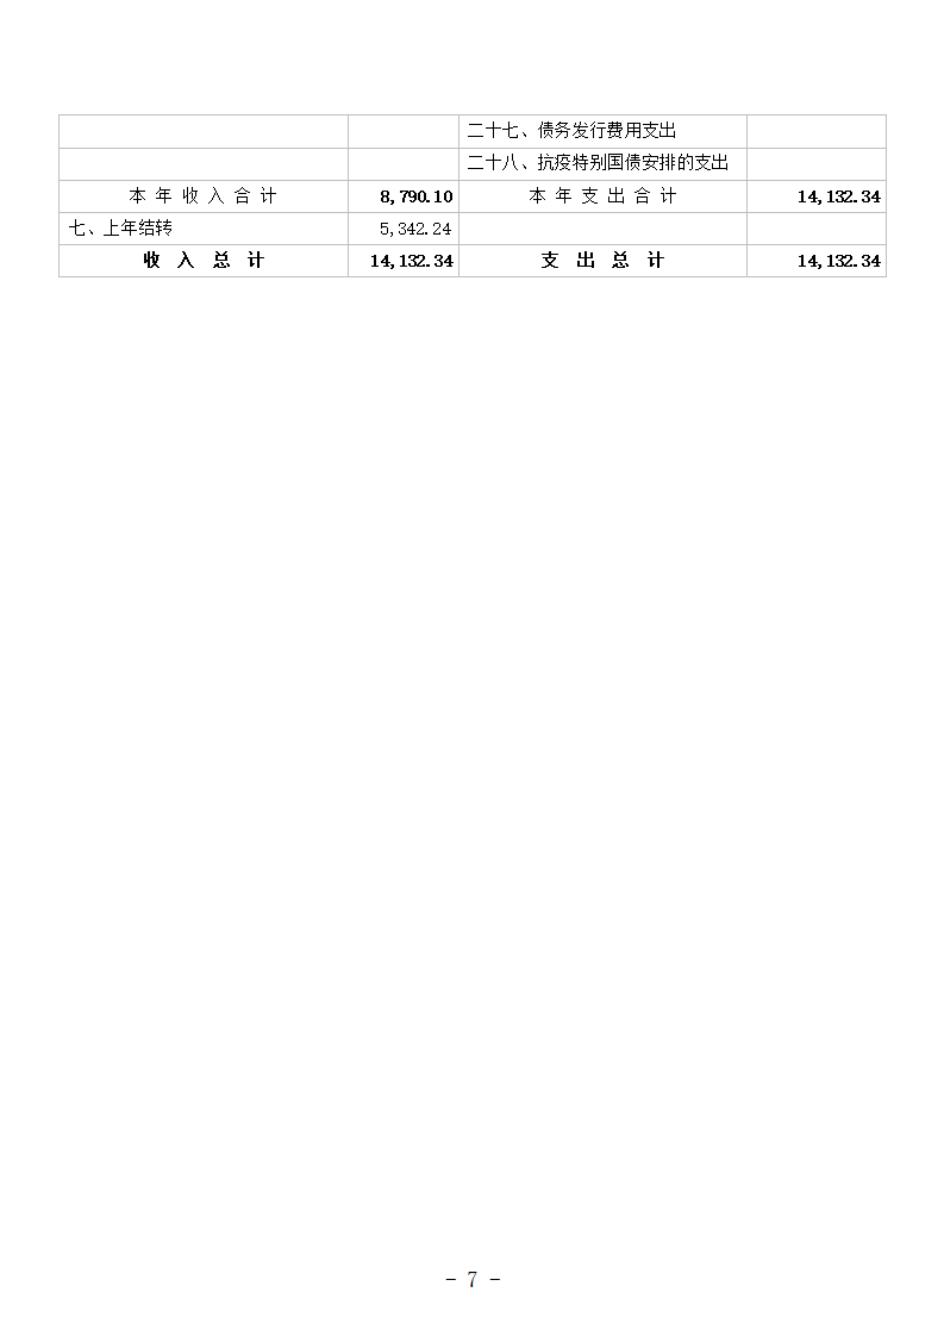 省考古院2024年四川省省级单位预算公开模板(3.14)_08.jpg